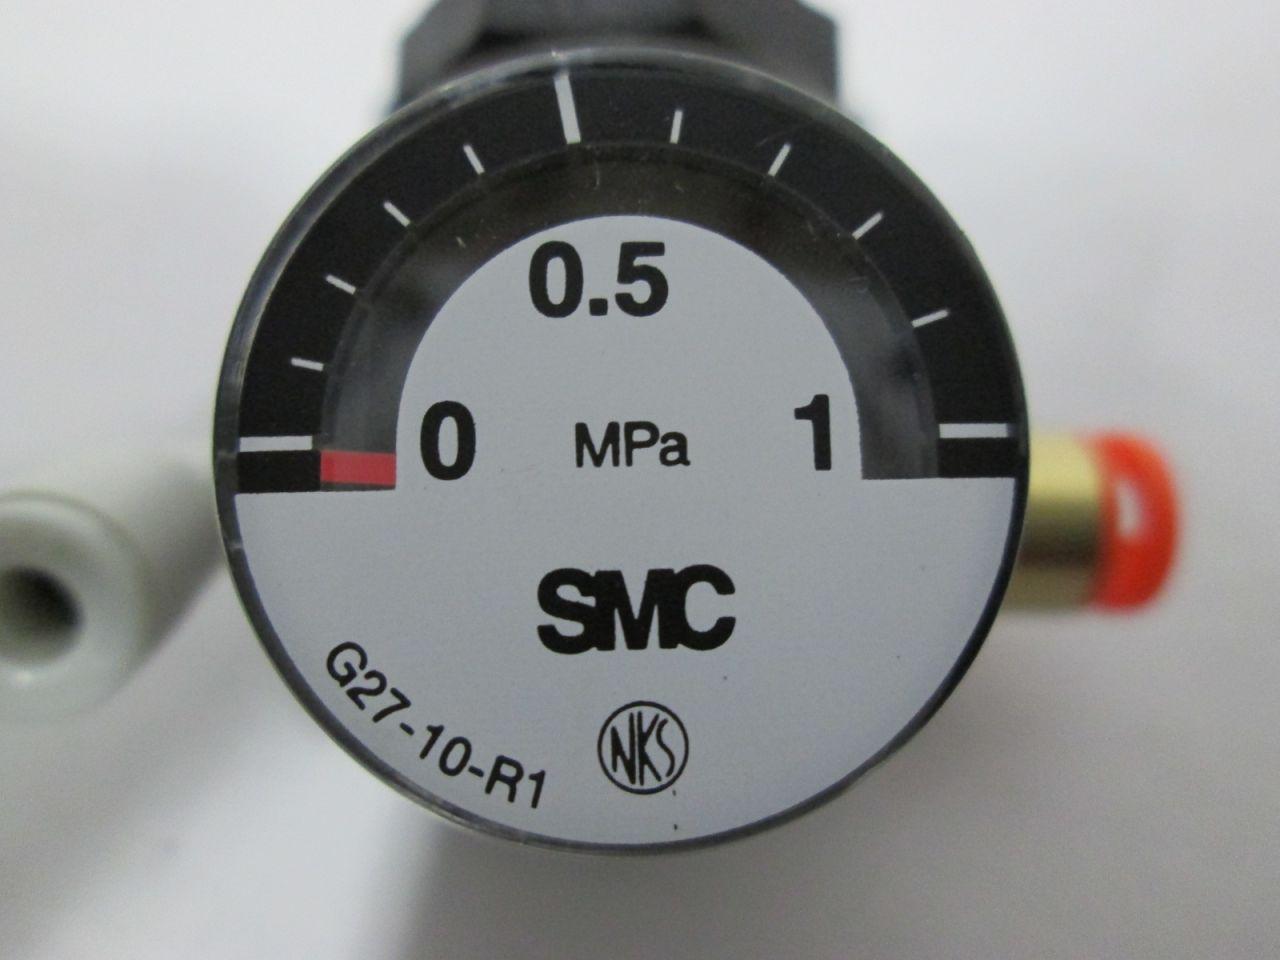 Details about   SMC G27-10-R1 Pneumatic Regulator 